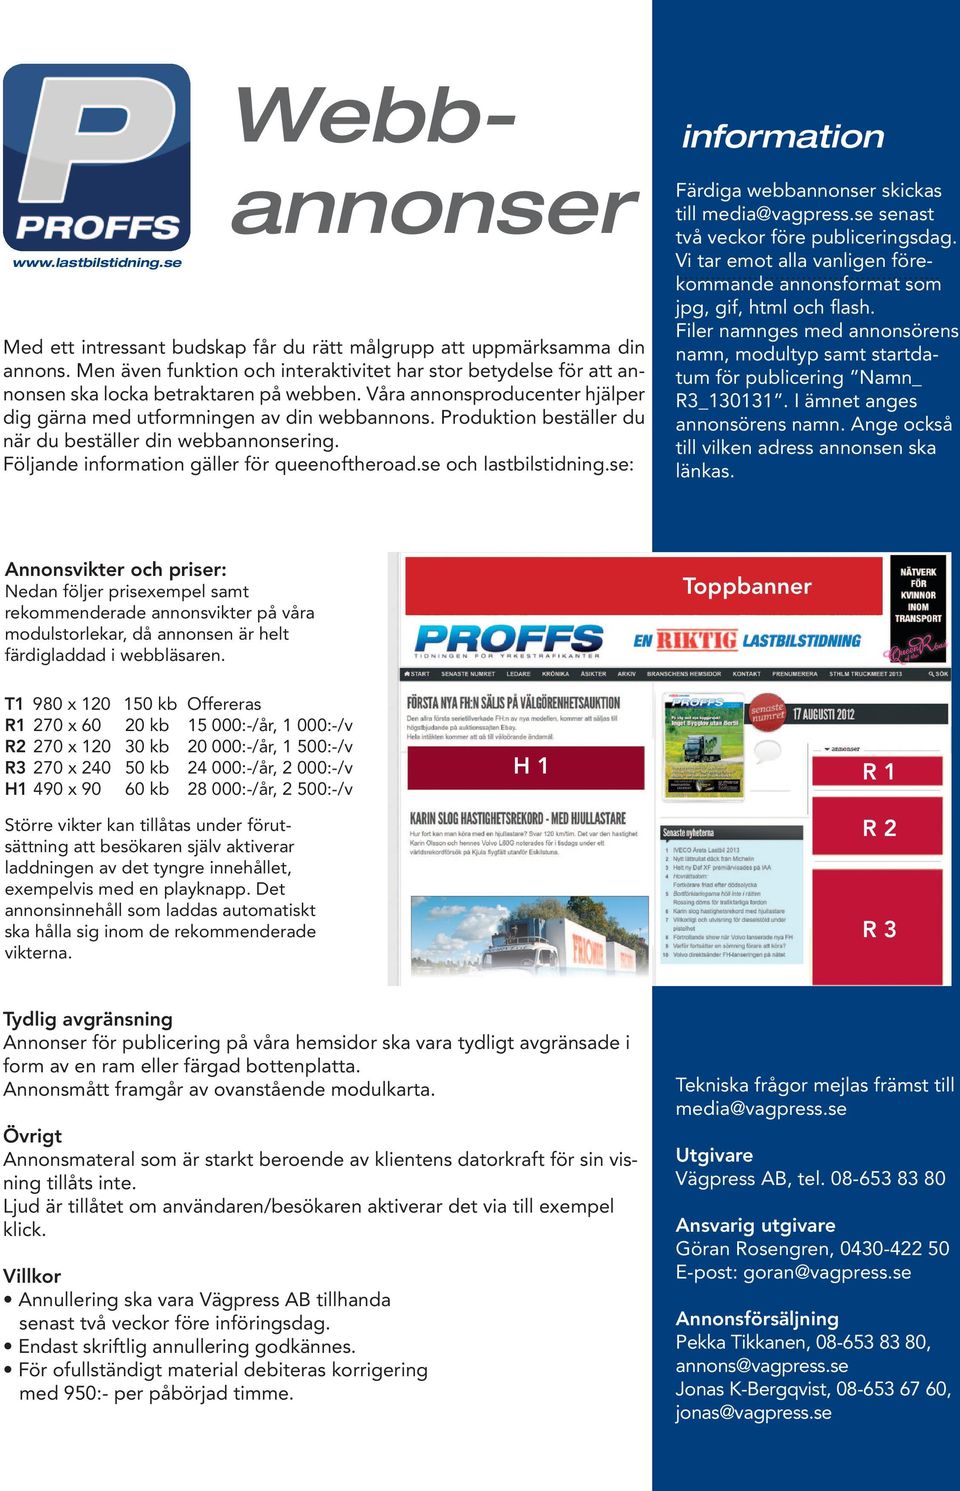 se och lastbilstidning.se: information Färdiga webbannonser skickas till media@vagpress.se senast två veckor före publiceringsdag.